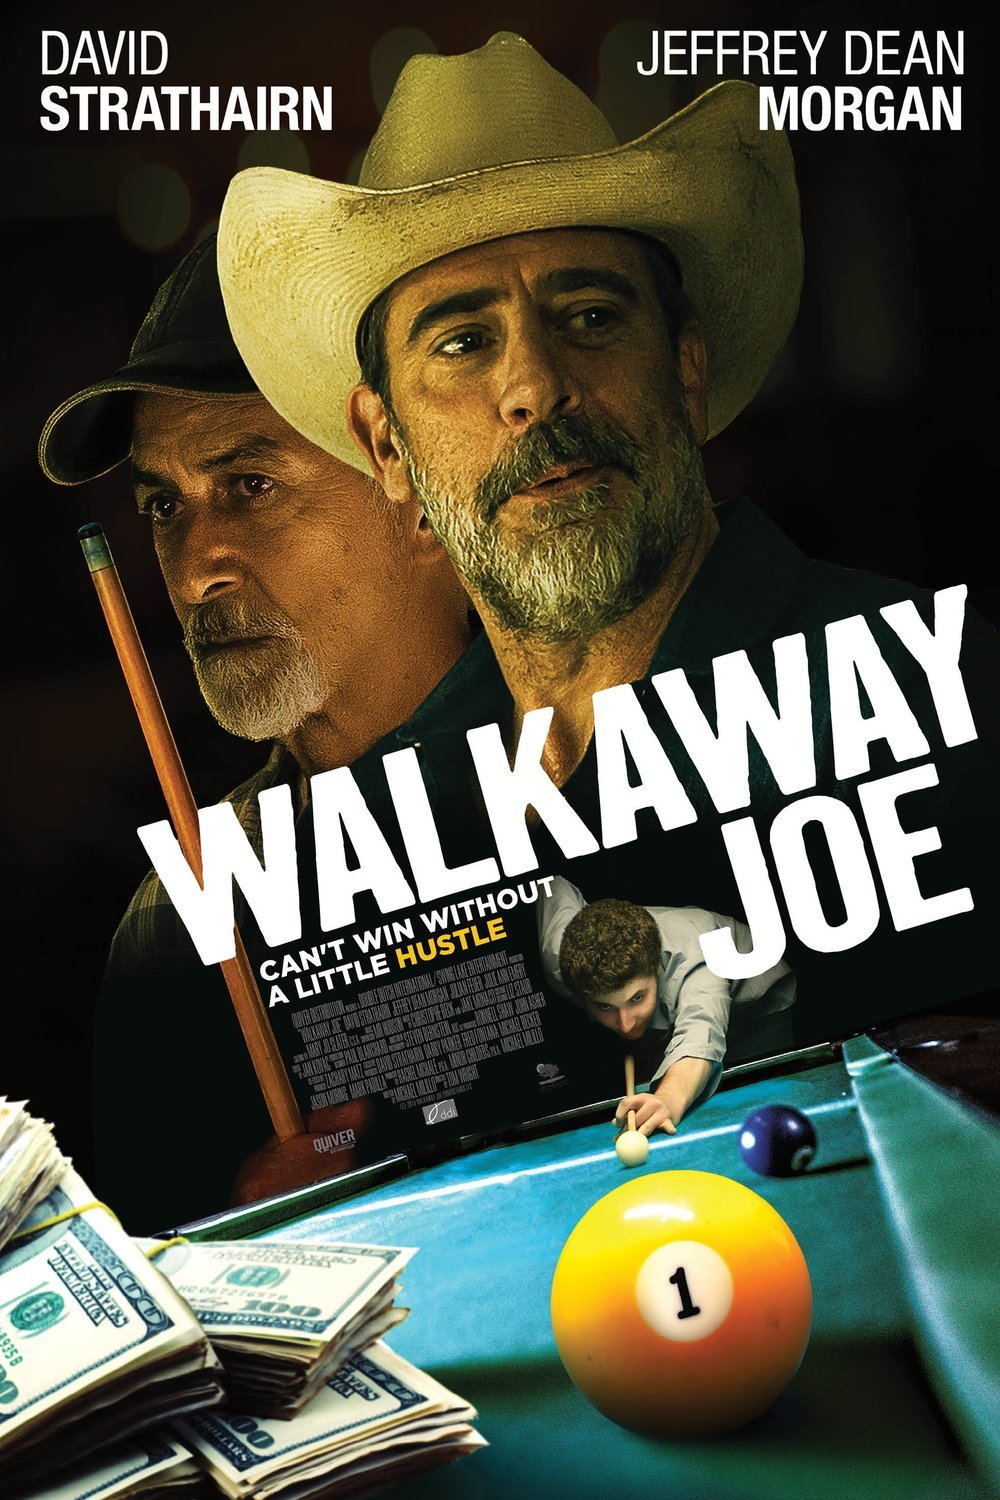 Poster of the movie Walkaway Joe